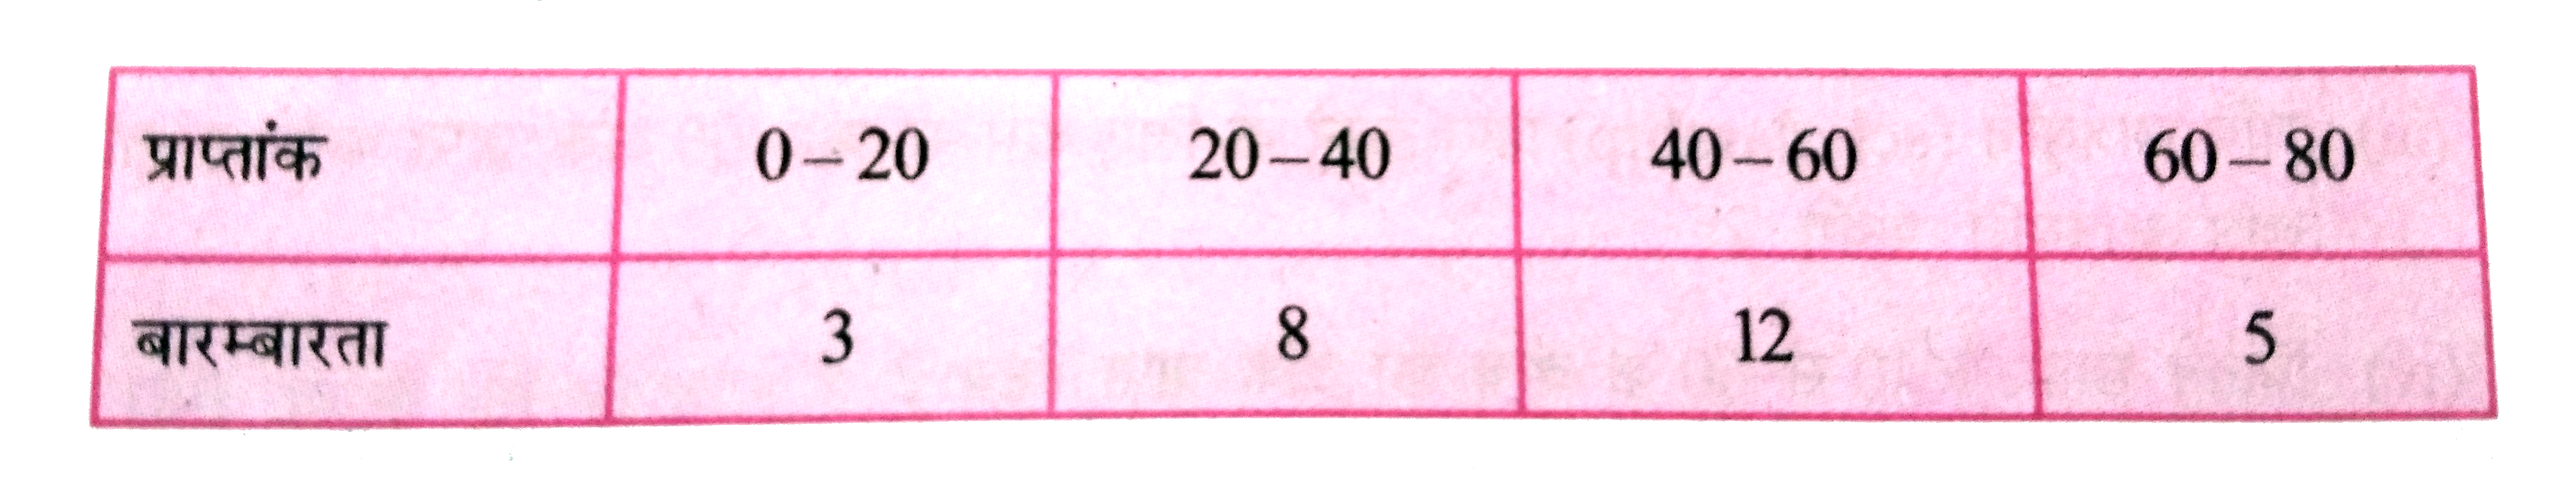 किसी कक्षा के छात्रों द्वारा प्राप्त अंकों की बारम्बारता सारणी निम्नलिखित है । संचयी बारम्बारता बंटन सारणी बनायें ।